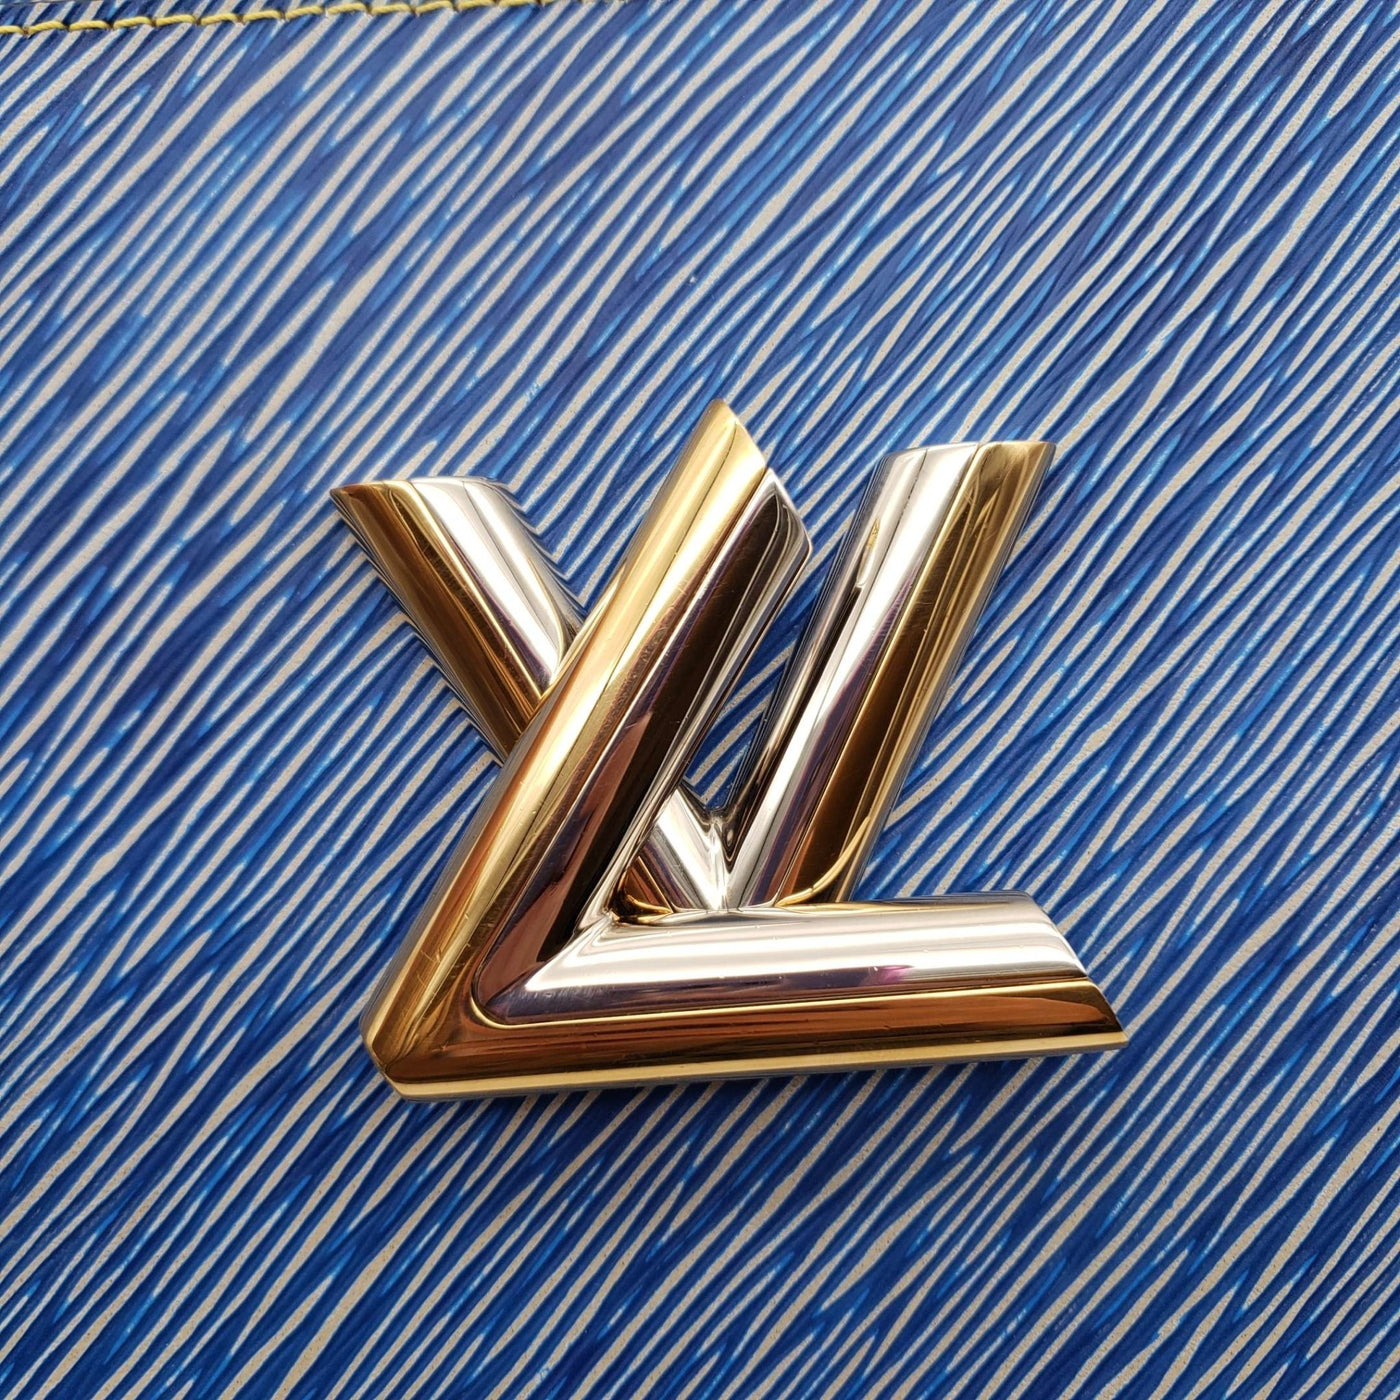 Louis Vuitton Twist MM Blue Denim Epi Leather Shoulder Bag - Luxury Cheaper